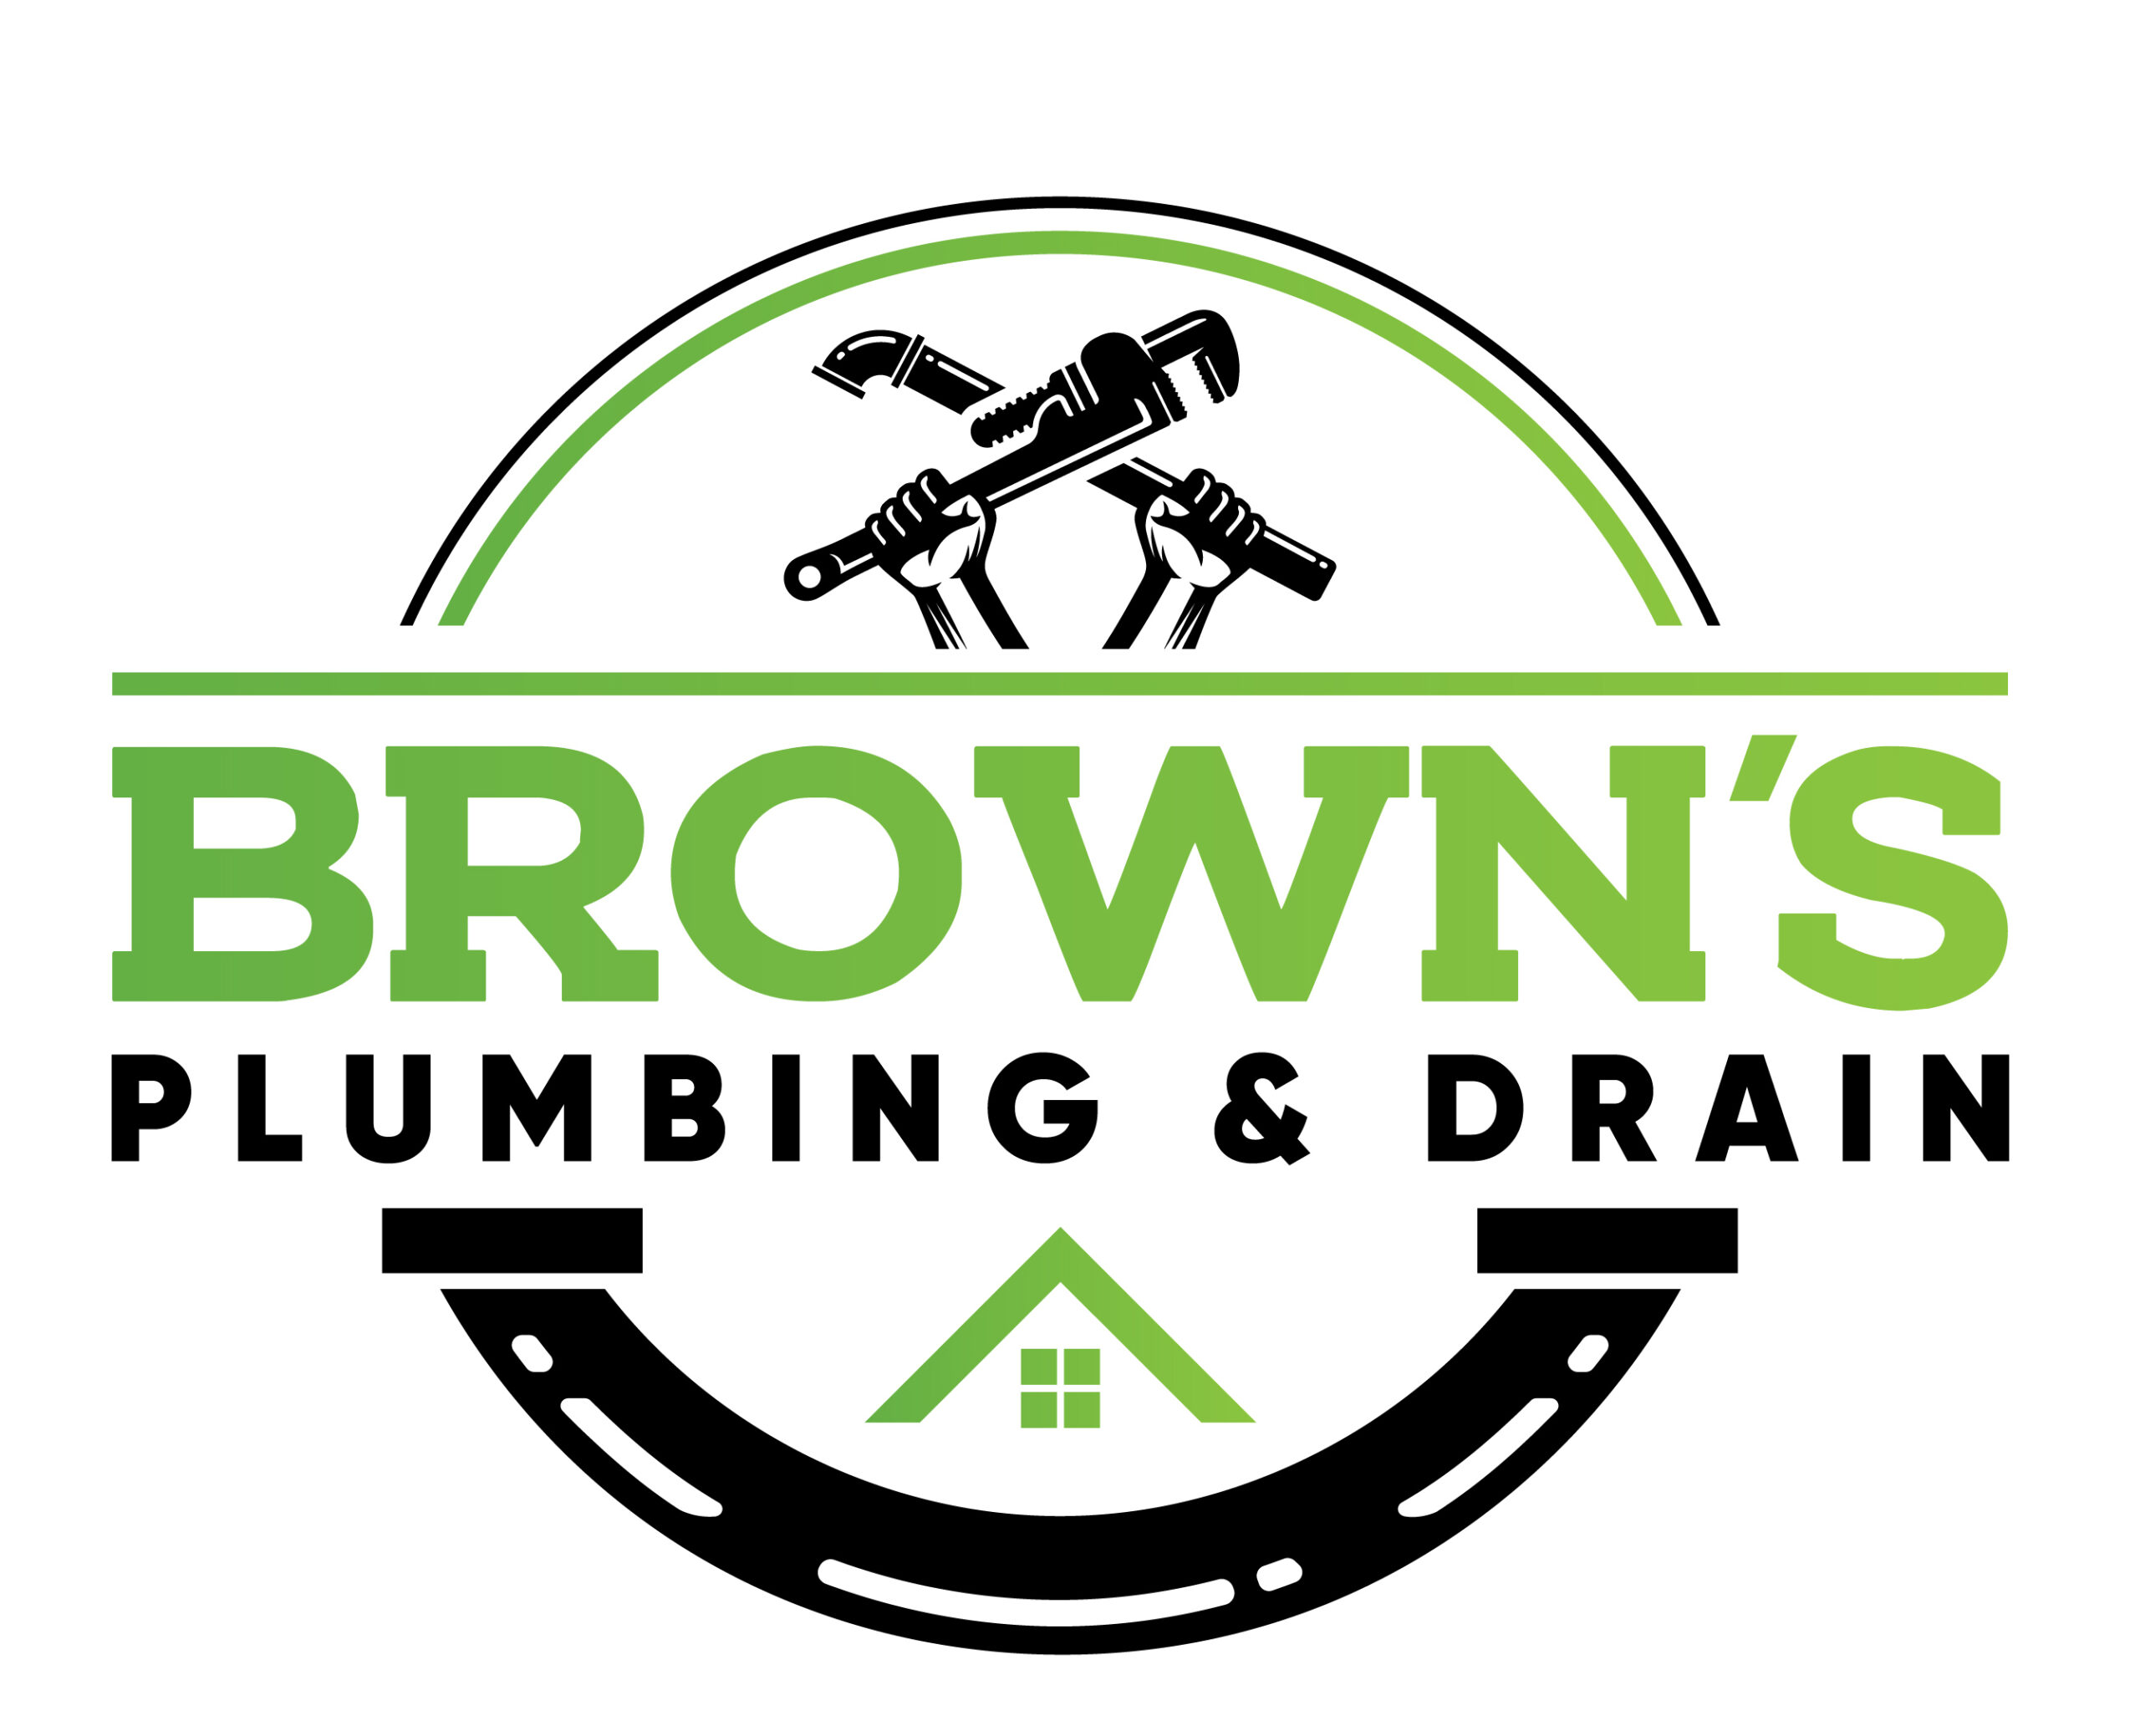 Browns Plumbing